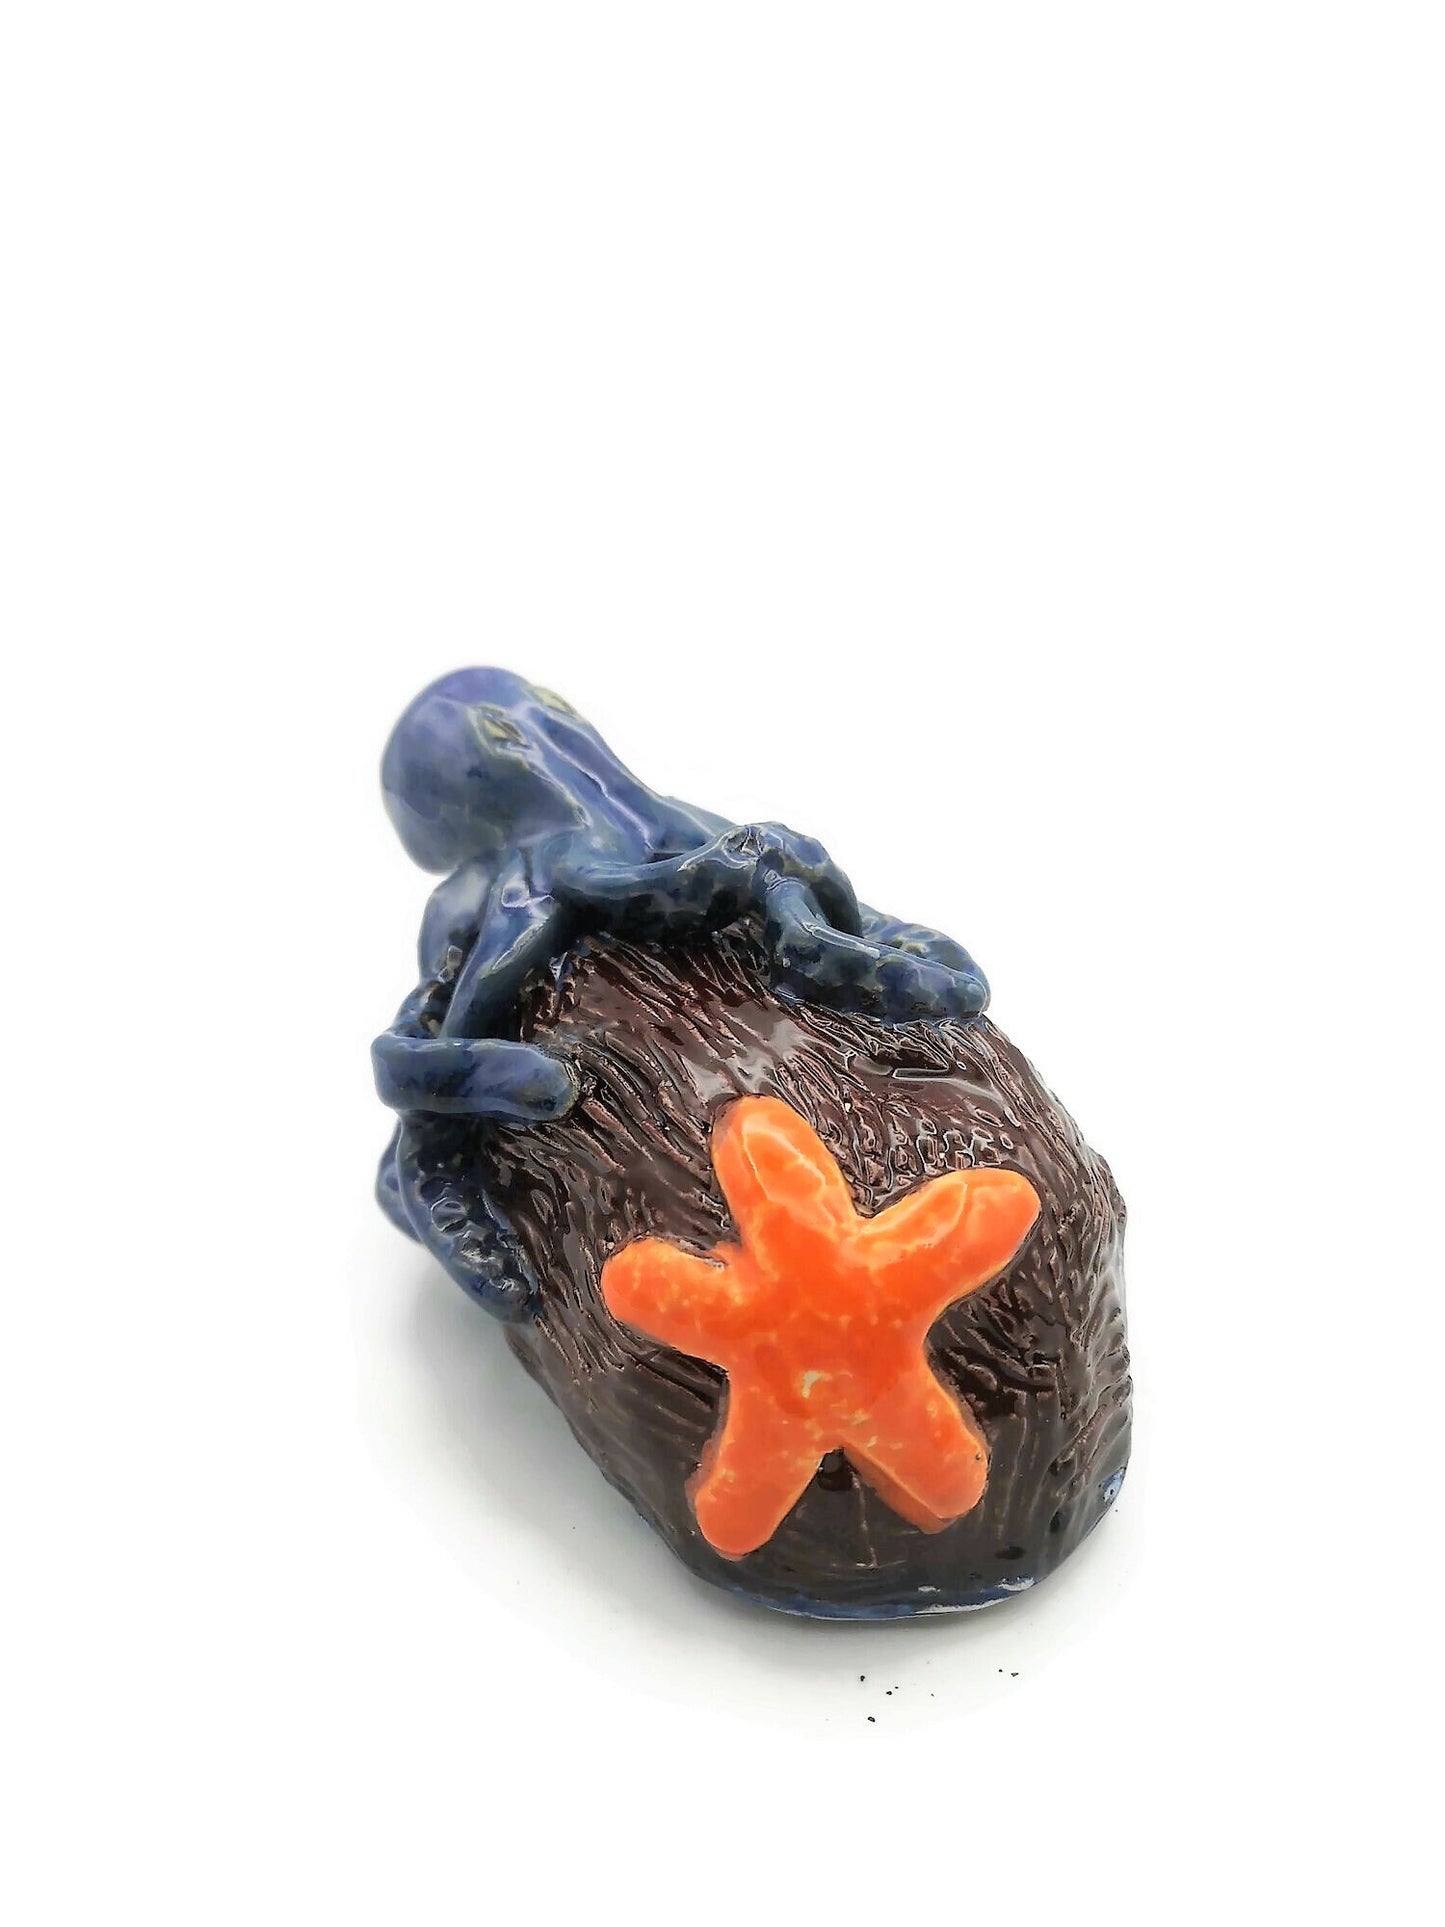 Handmade Blue Ceramic Octopus And Orange Starfish Sculpture, Modern Contemporary Coastal Home Decor For Table or Shelf - Ceramica Ana Rafael